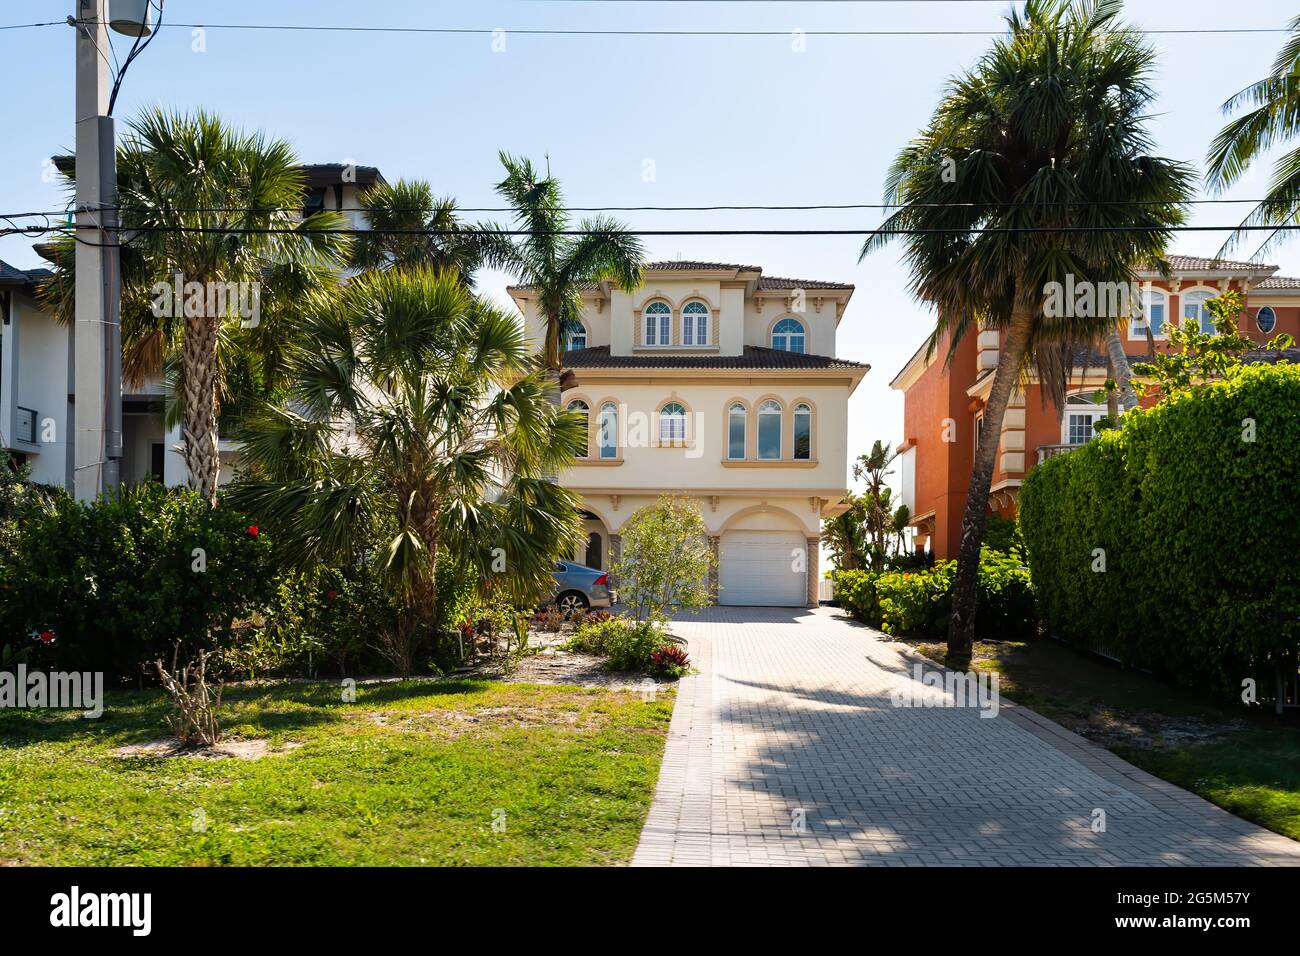 Bonita Springs, il golfo della Florida della costa del messico con palme in villa di lusso casa di architettura moderna fronte mare e viale di accesso al garage Foto Stock